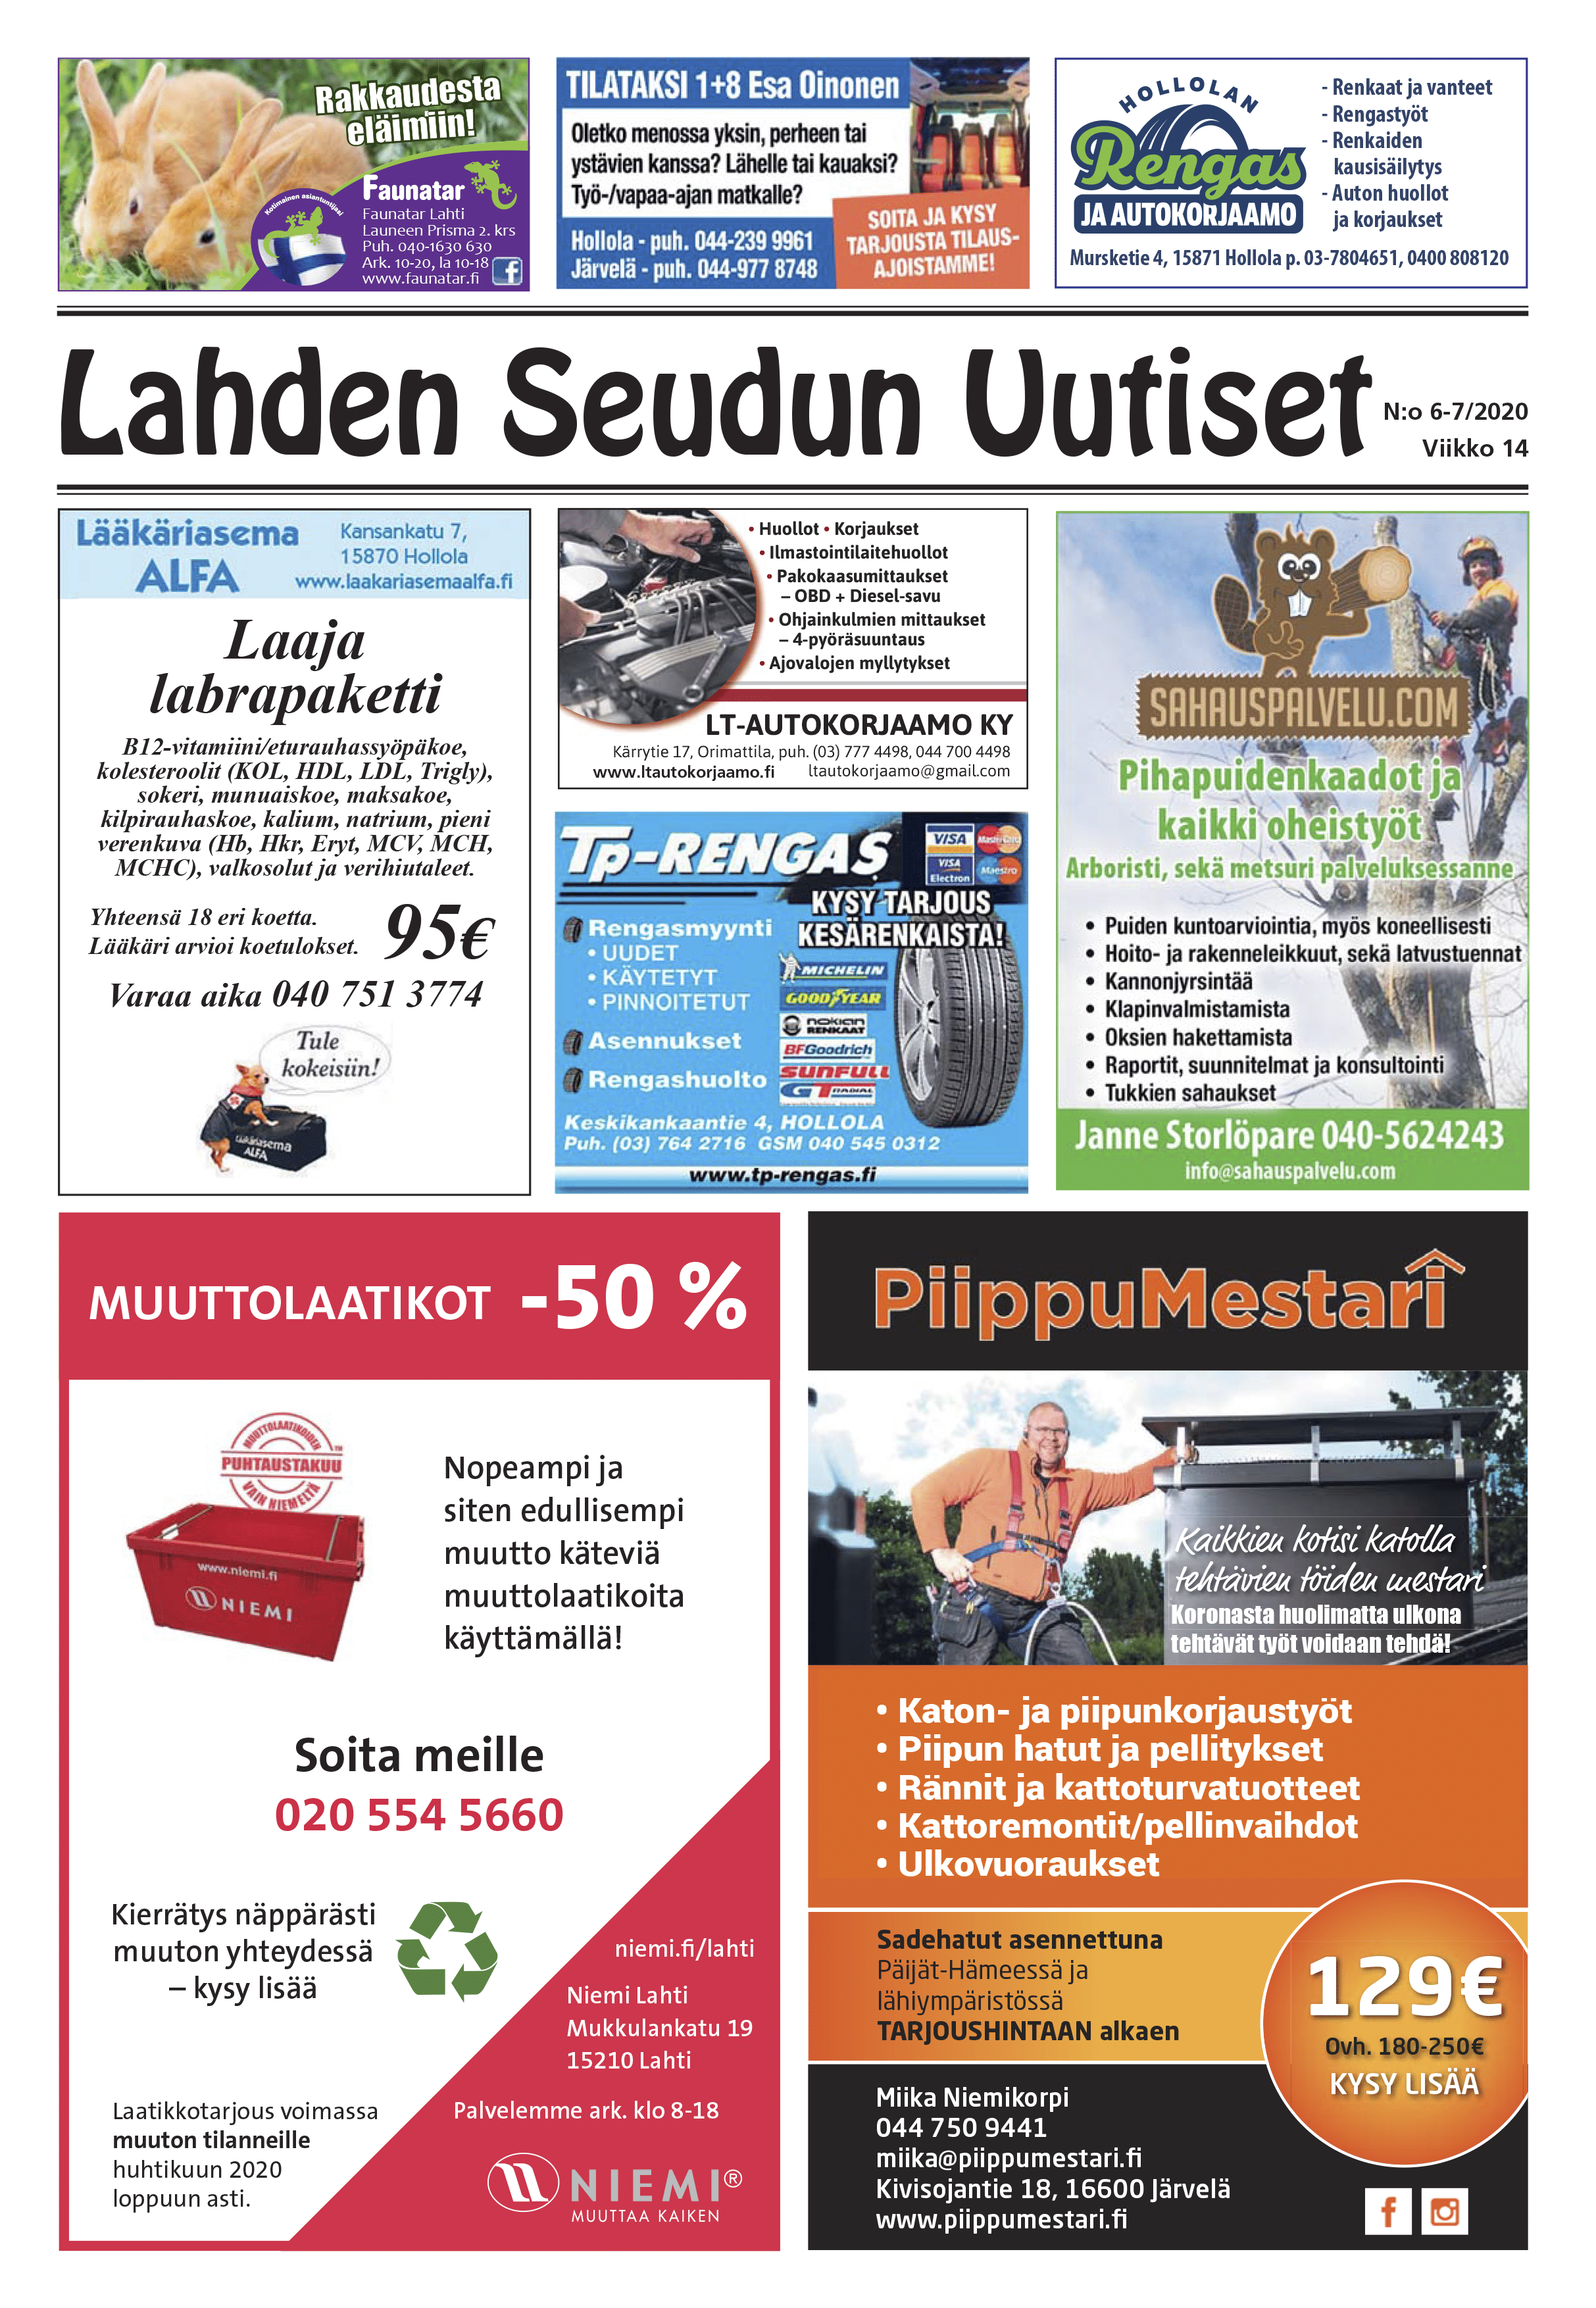 Lahden Seudun Uutiset 6-7/2020